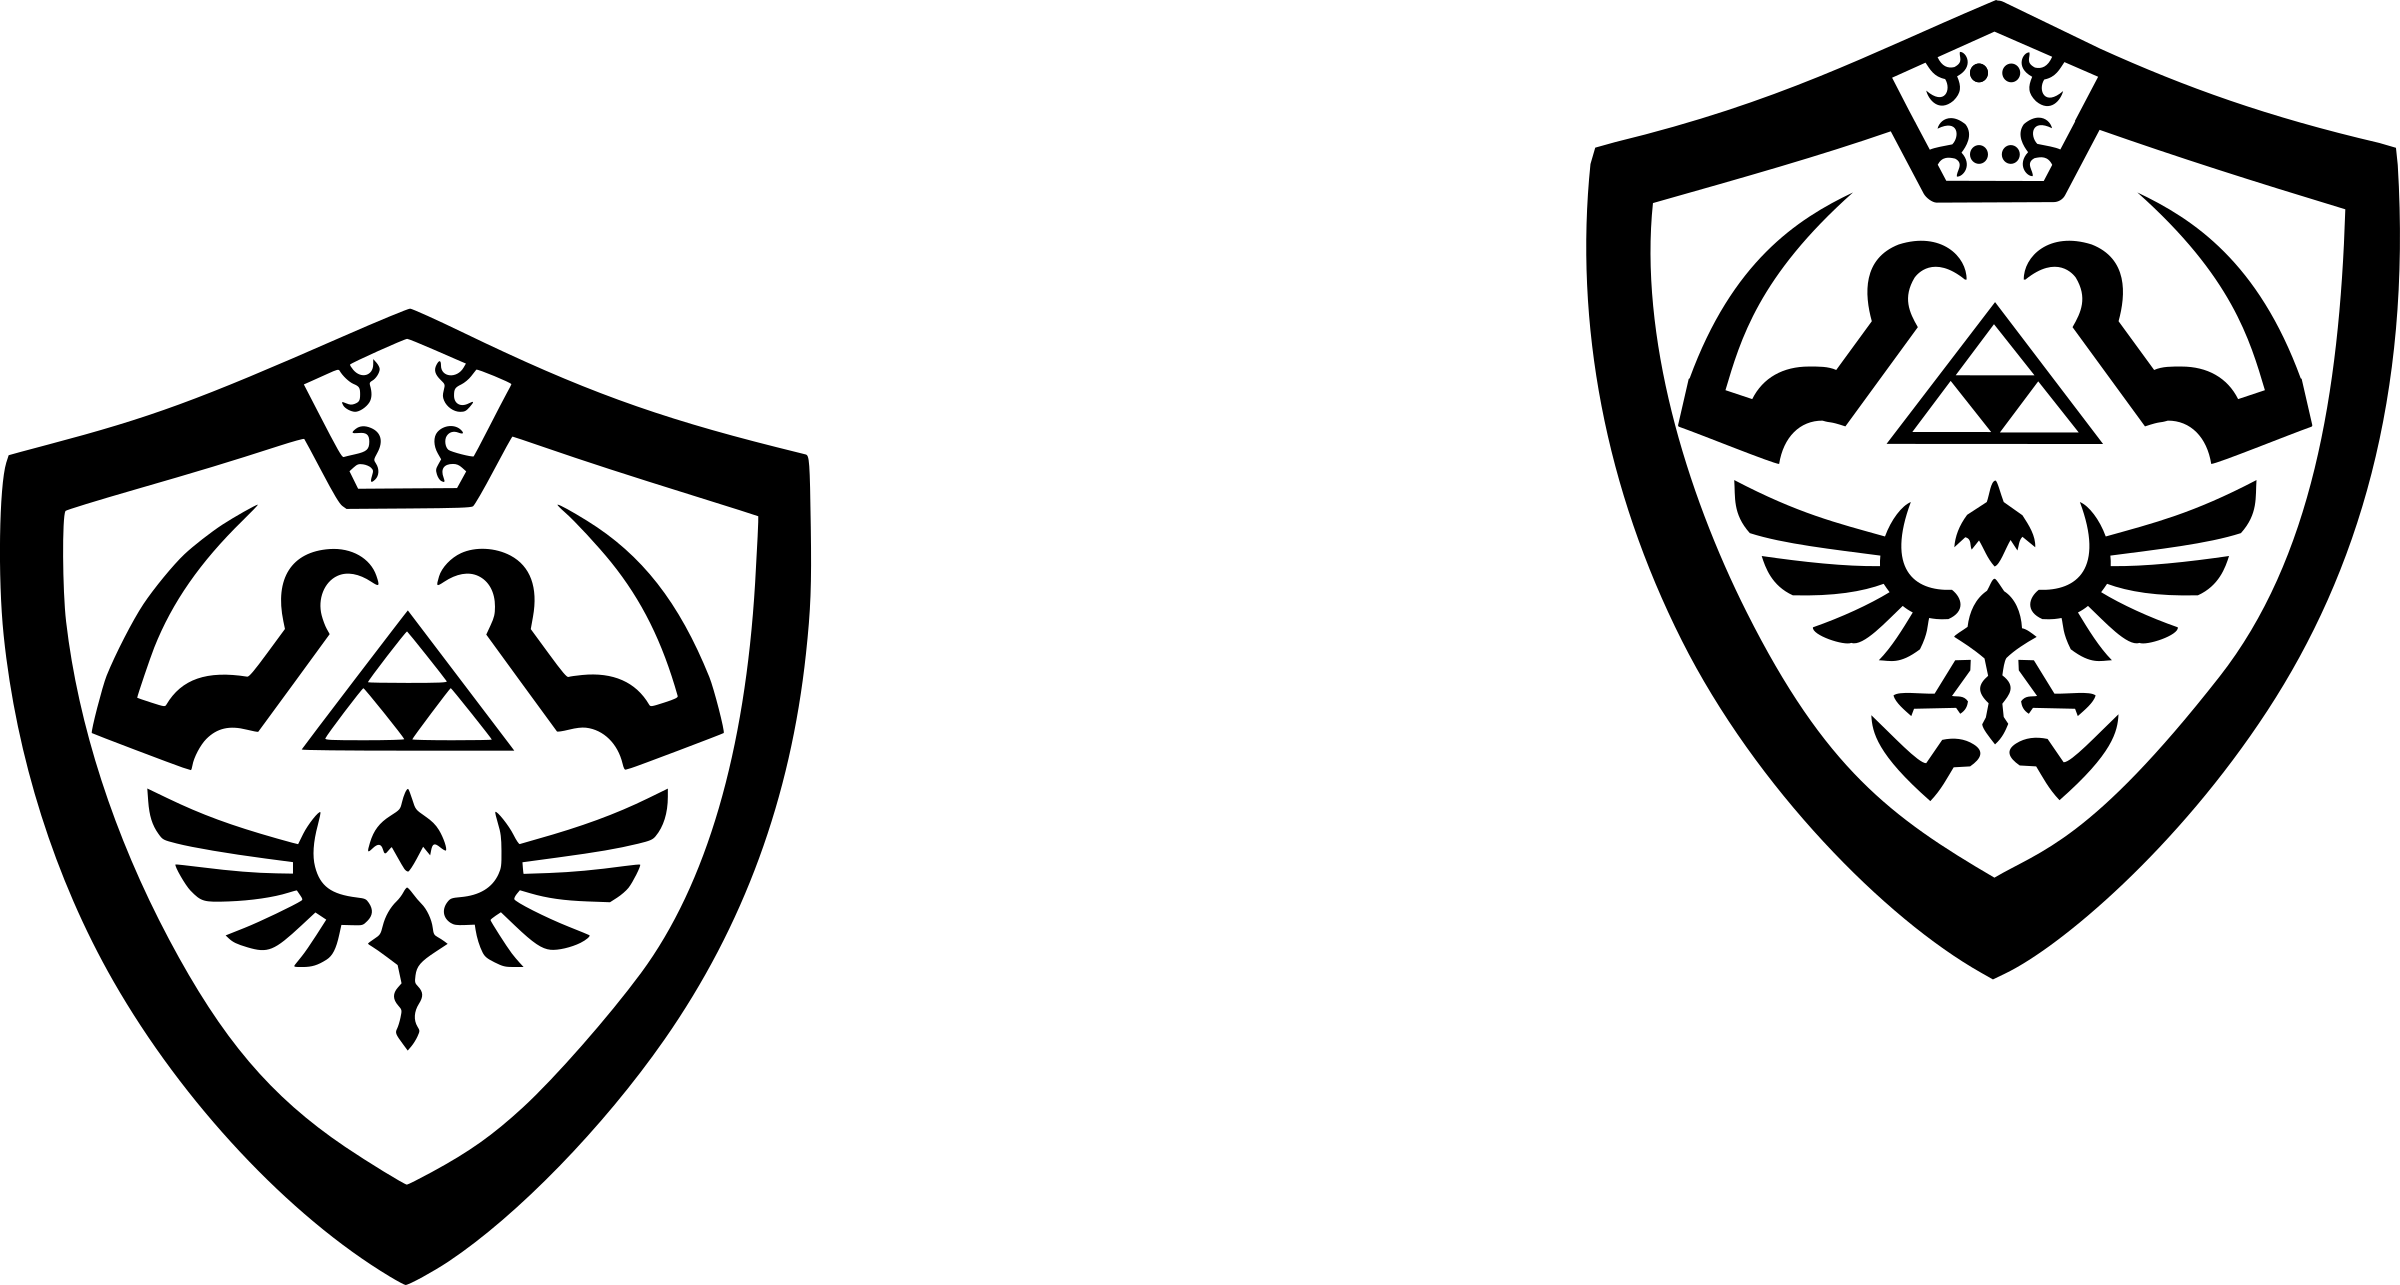 zelda symbol